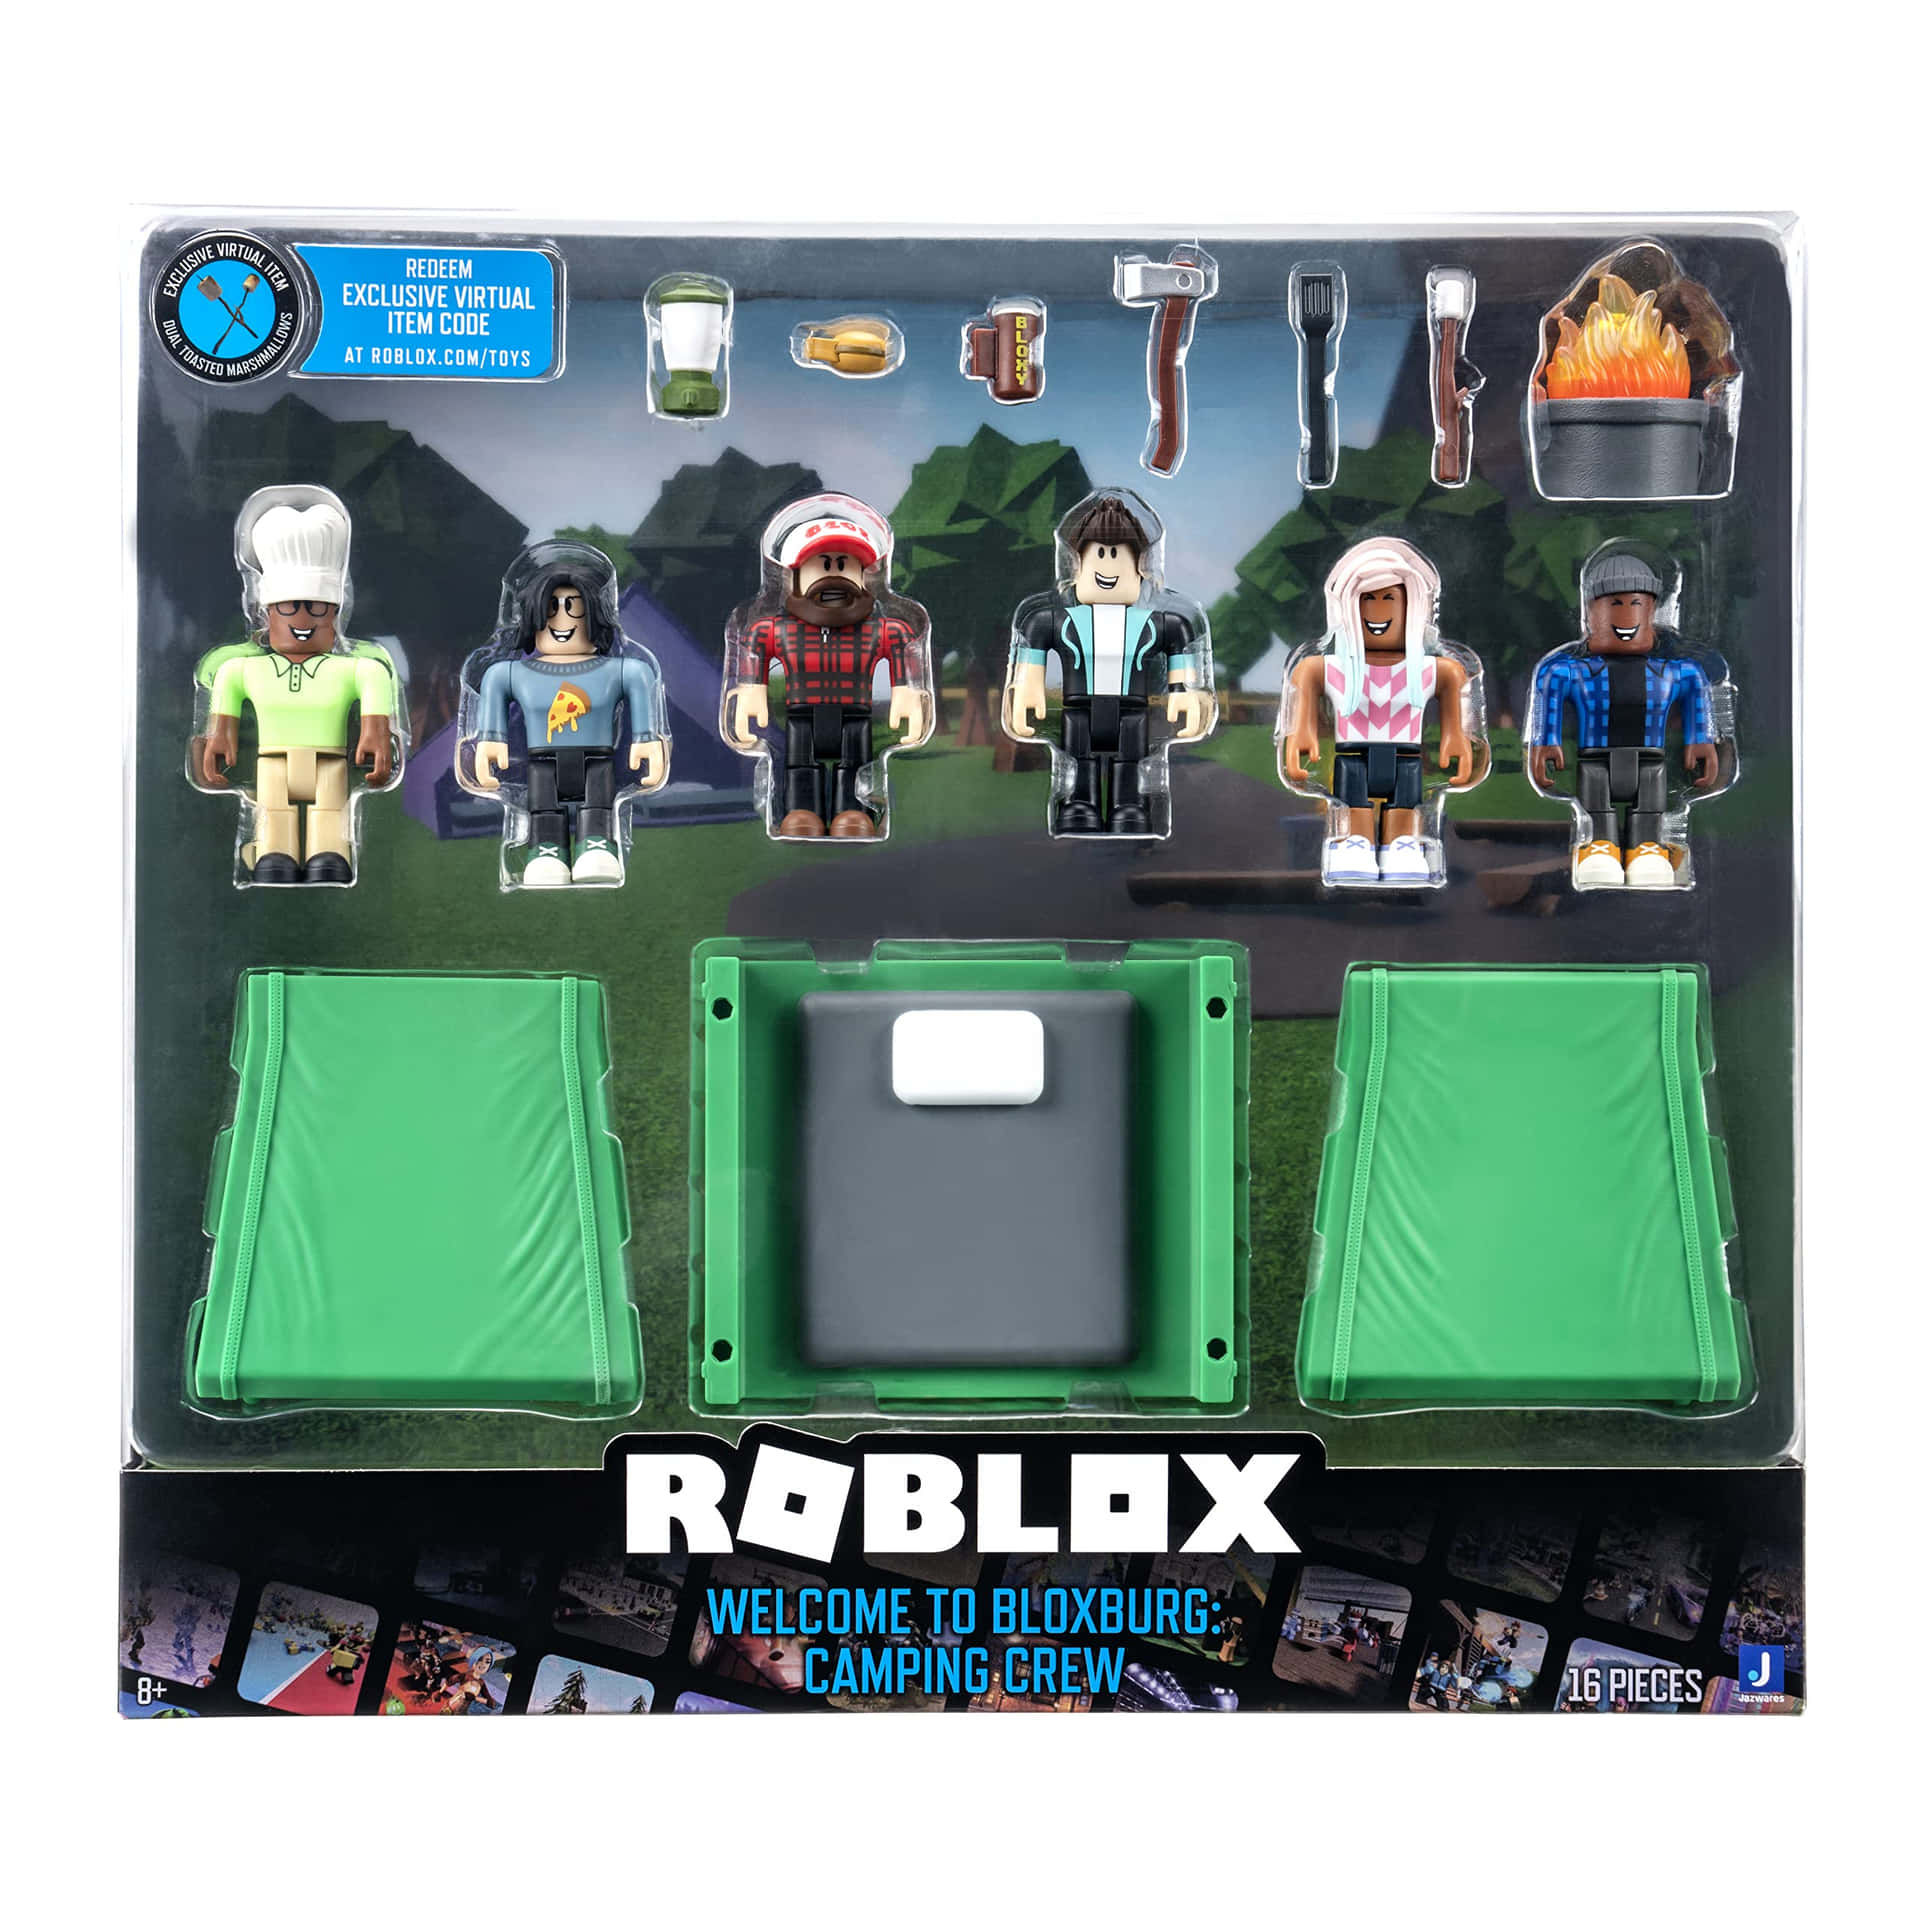 16 Roblox Wallpaper ideas  roblox, wallpaper, roblox gifts